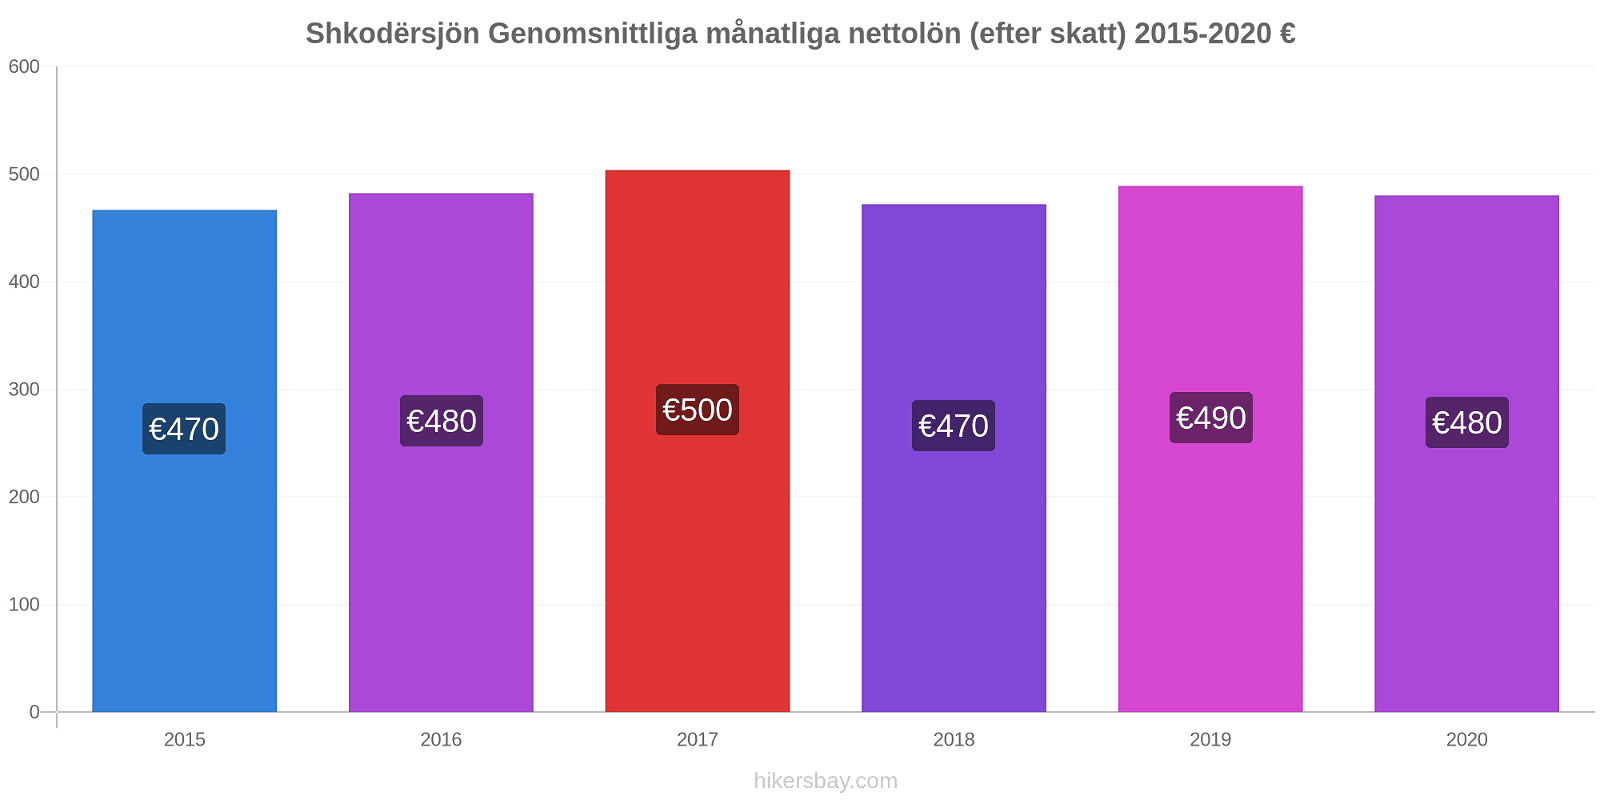 Shkodërsjön prisförändringar Genomsnittliga månatliga nettolön (efter skatt) hikersbay.com